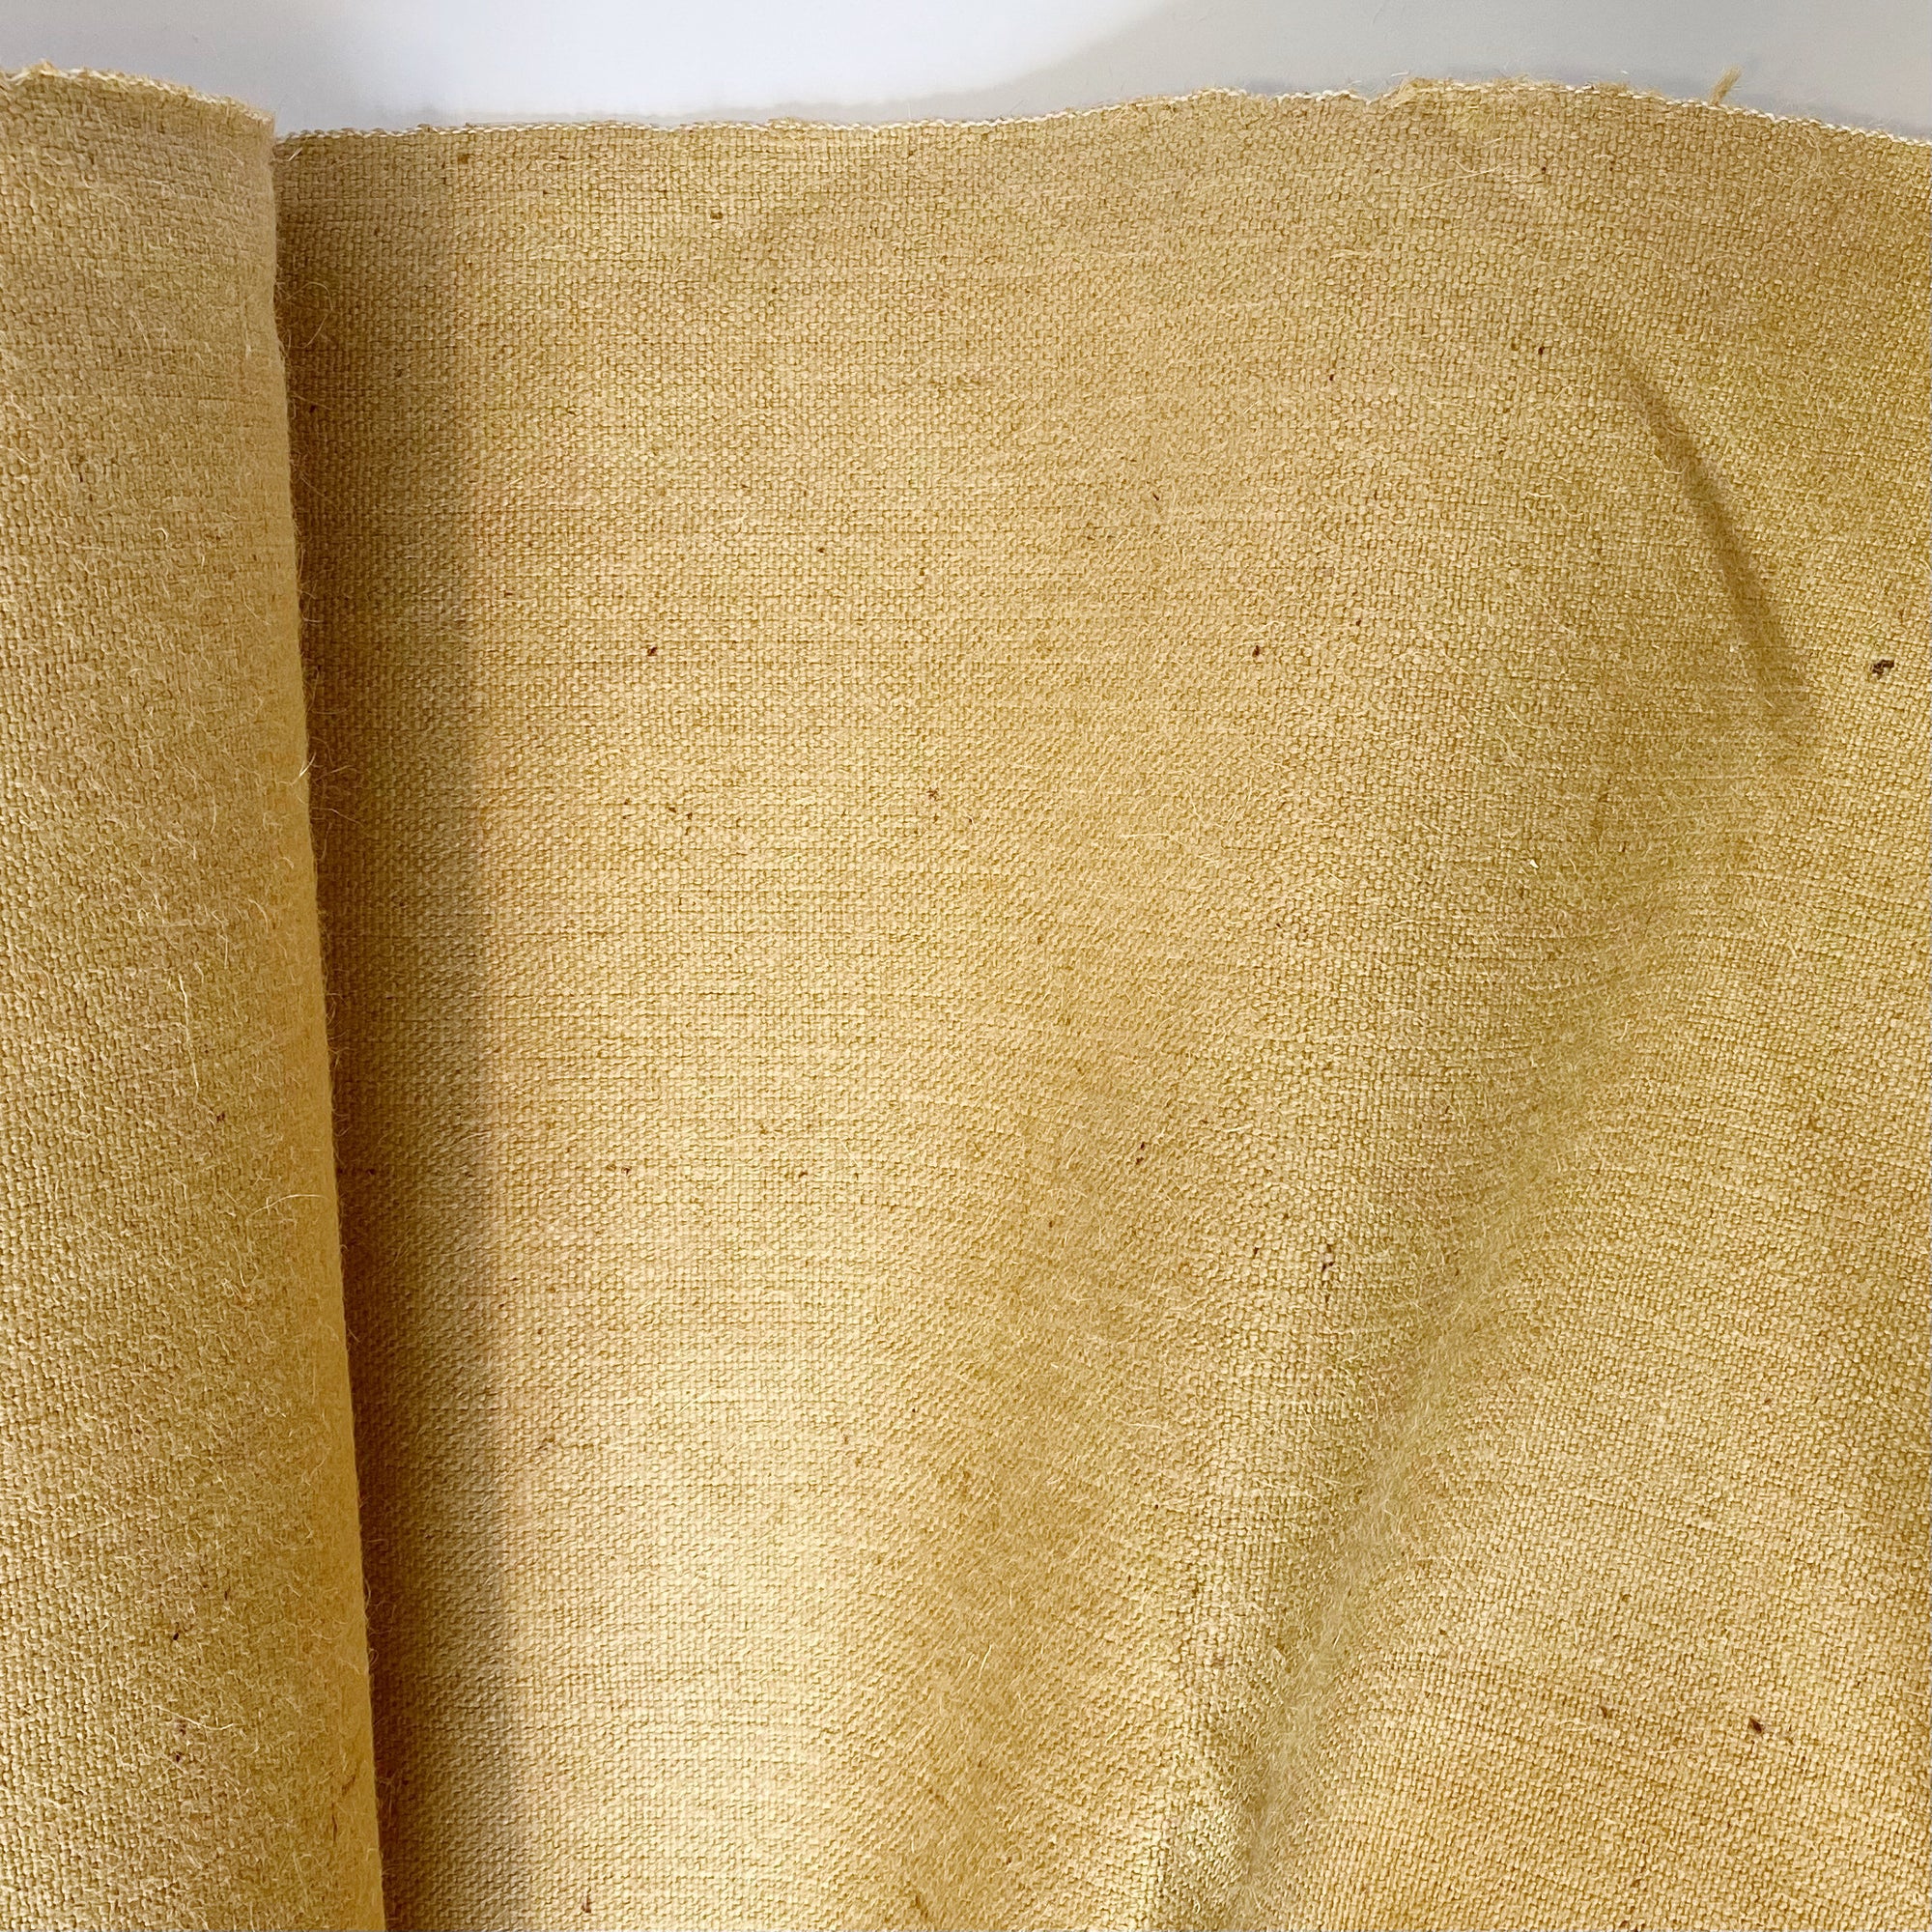 Burlap - Savannah Fabric Company